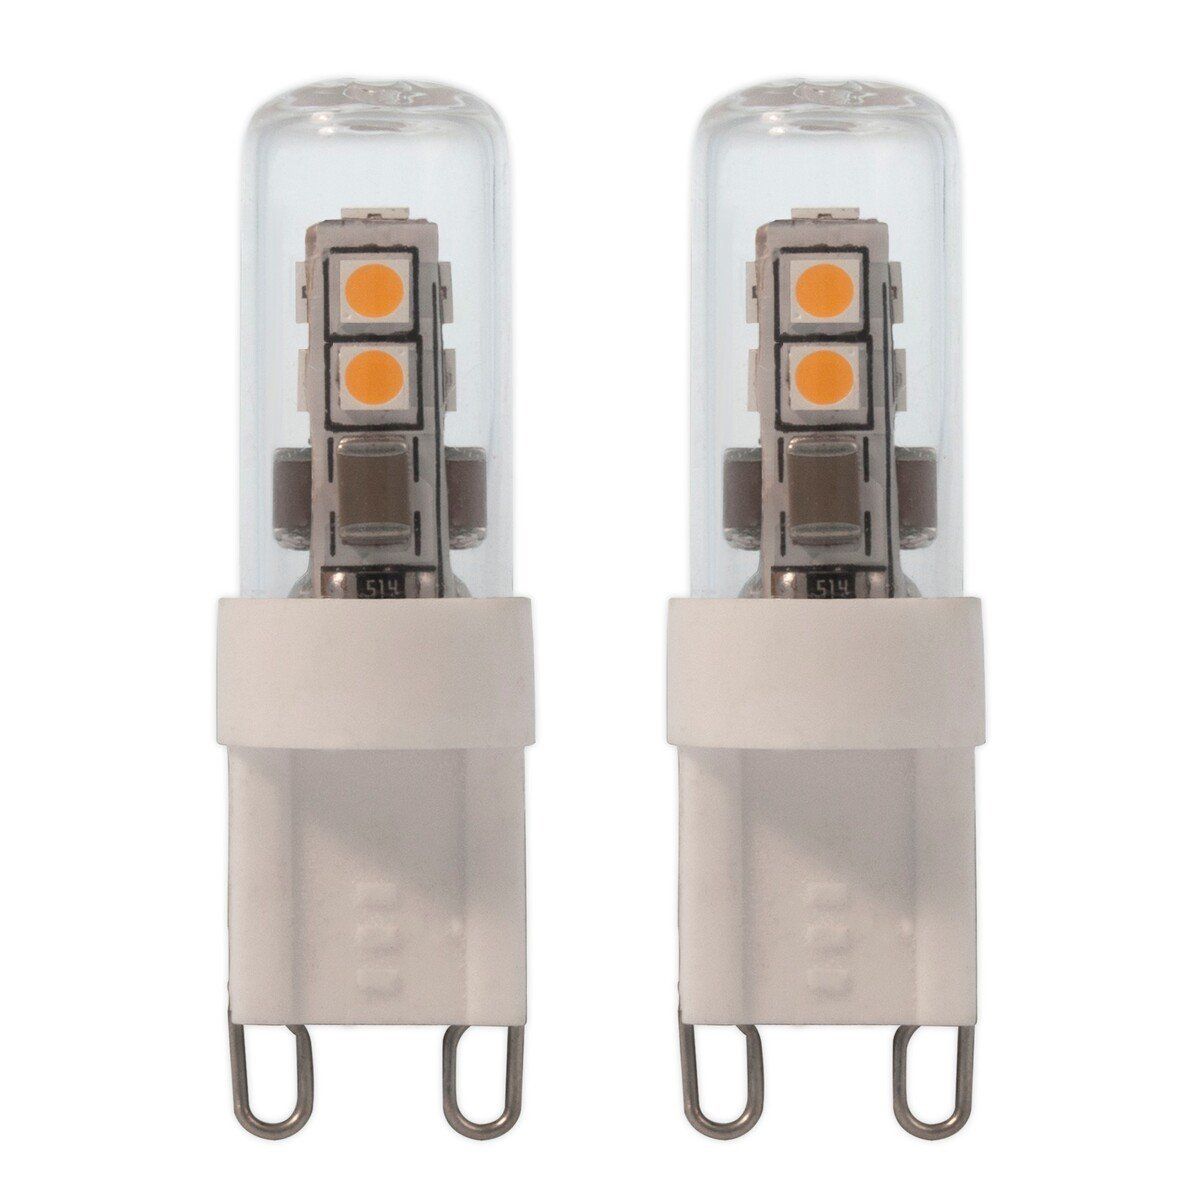 Ampoule LED G9 douille 2W 180lm lampe lot de 2, ETC Shop: lampes,  mobilier, technologie. Tout d'une source.